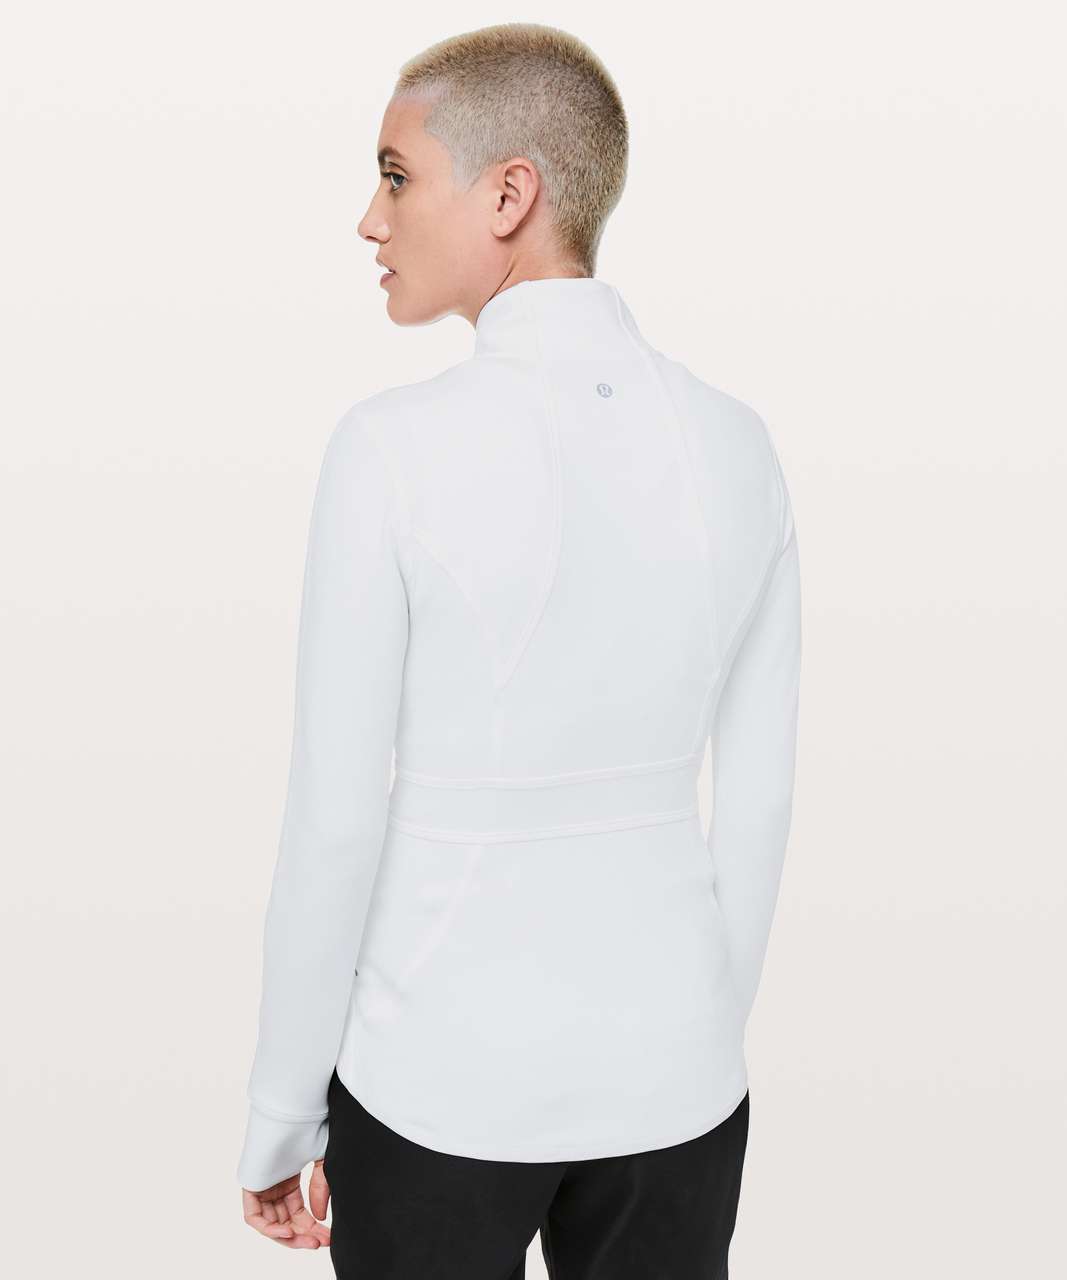 Lululemon In Profile Jacket - White